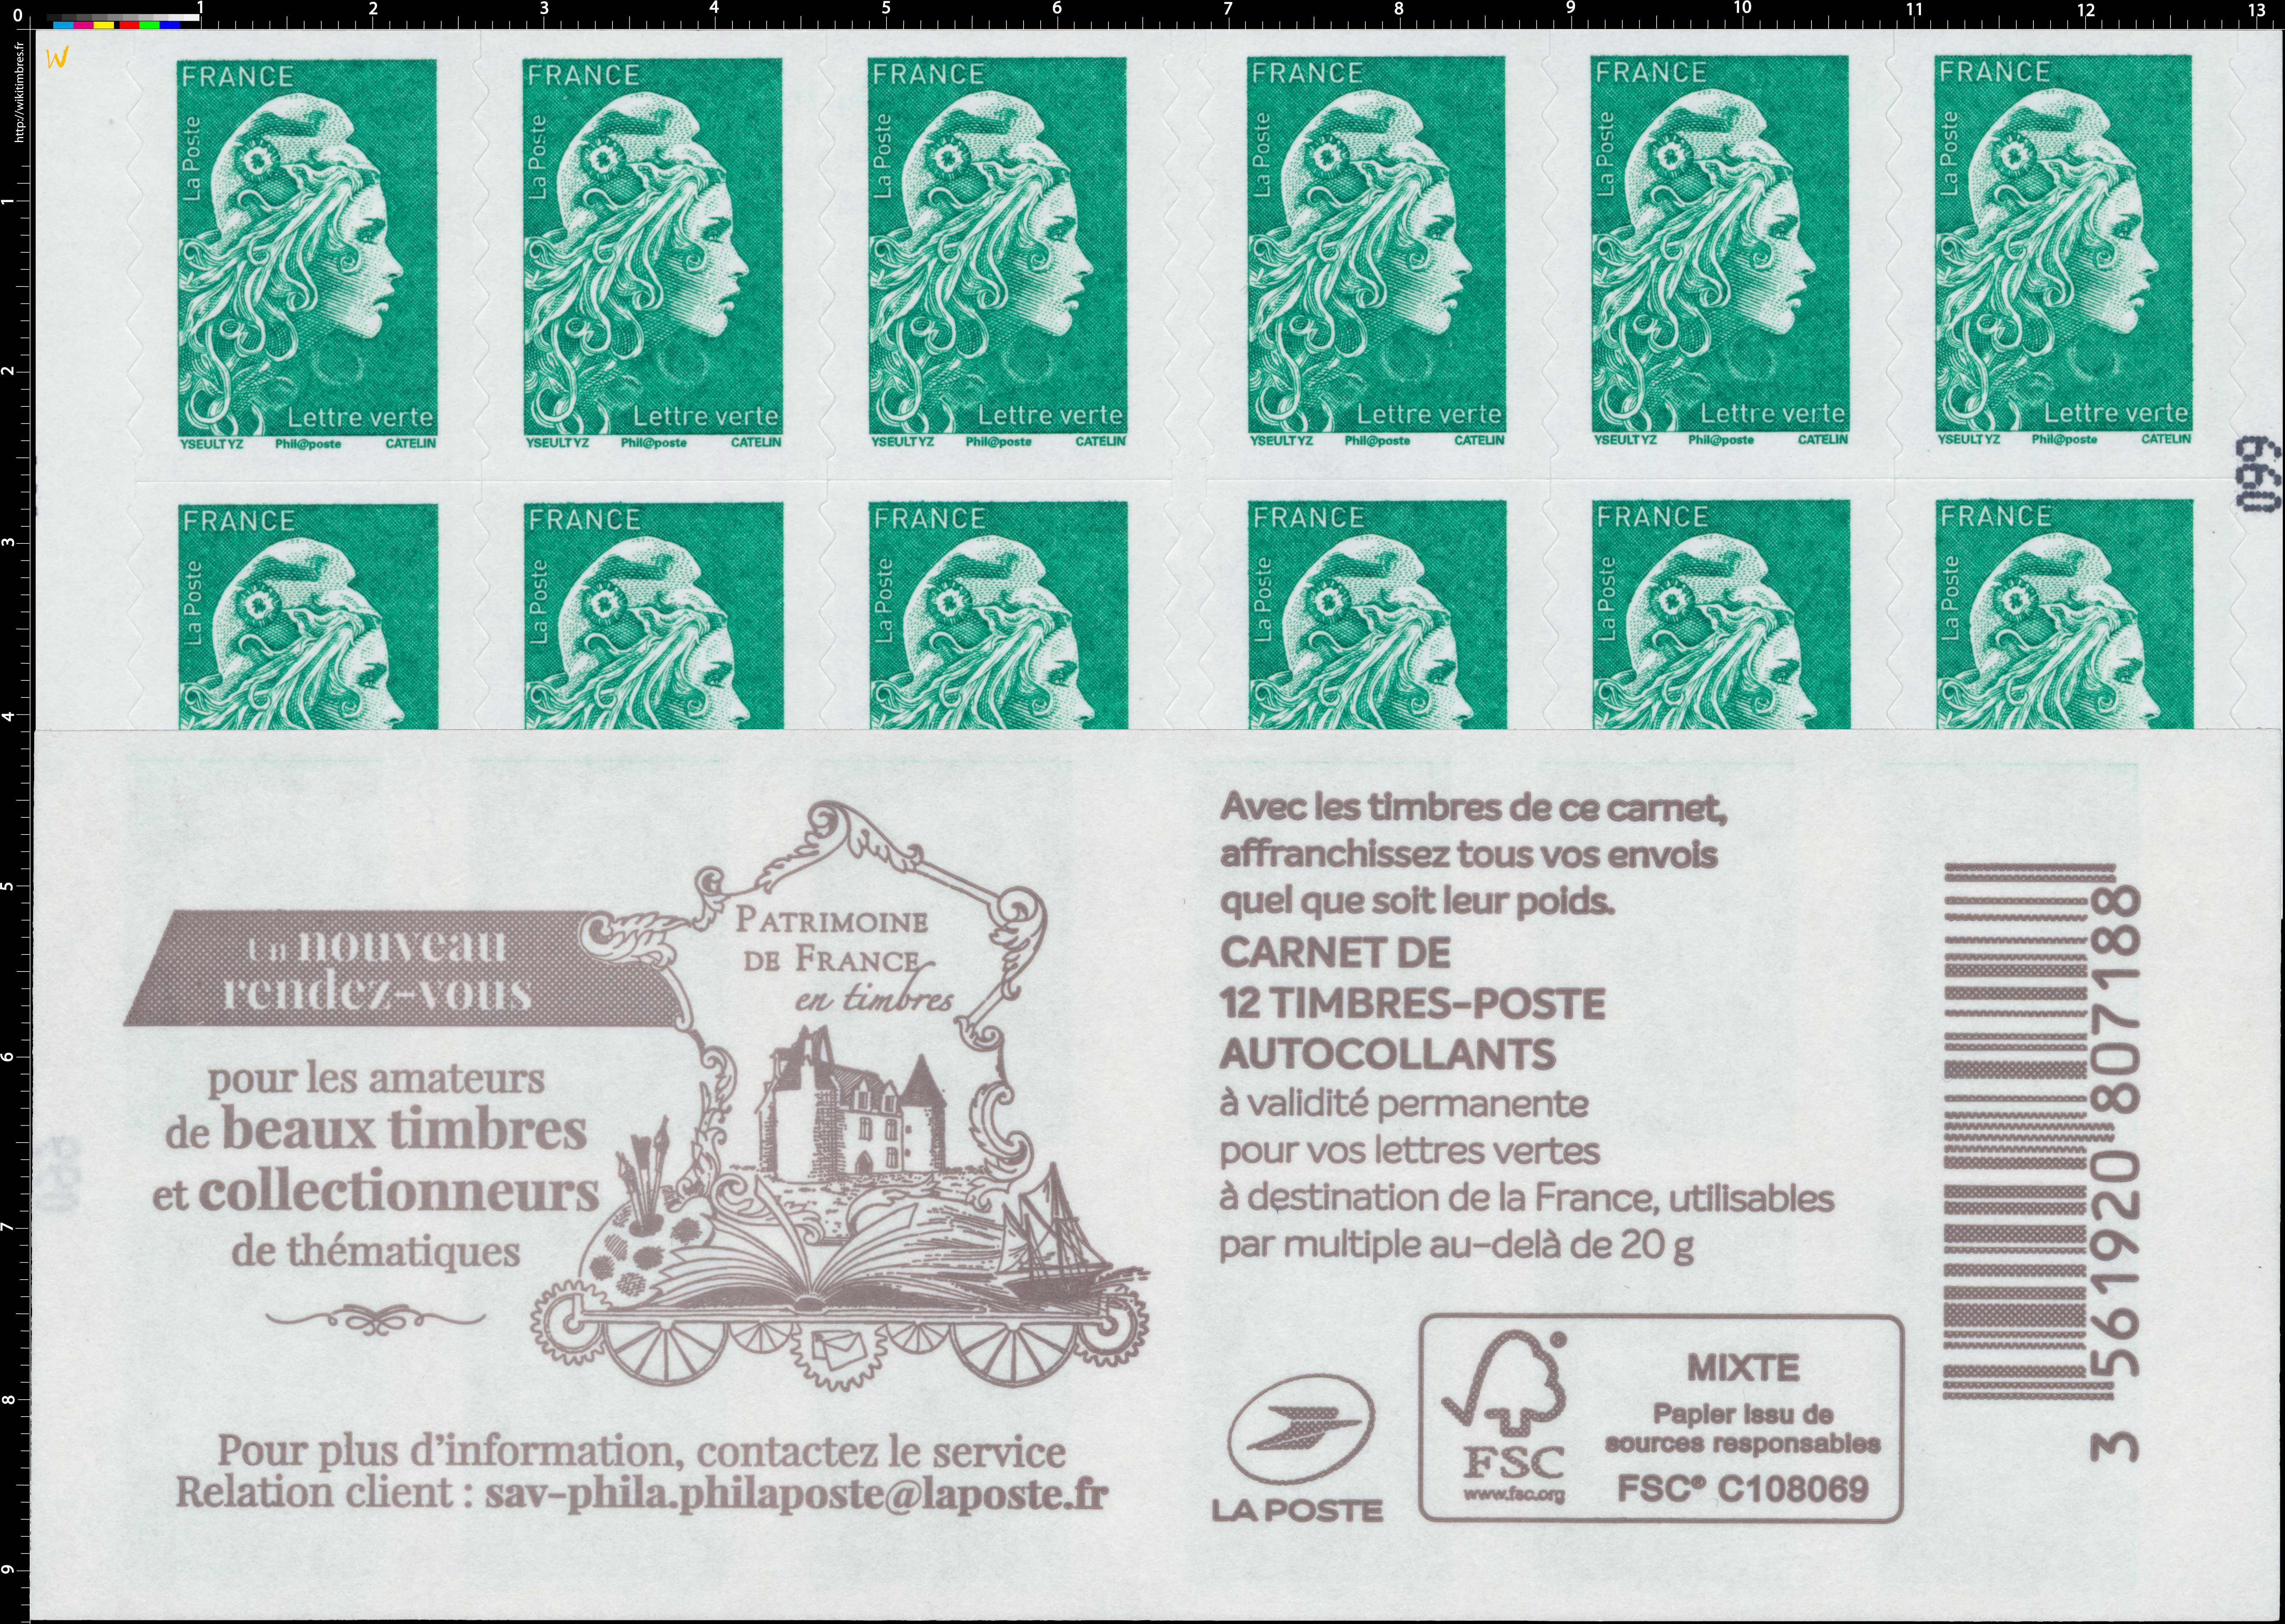 2019 Un nouveau rendez-vous pour les amateurs de beaux timbres et collectionneurs de thématiques